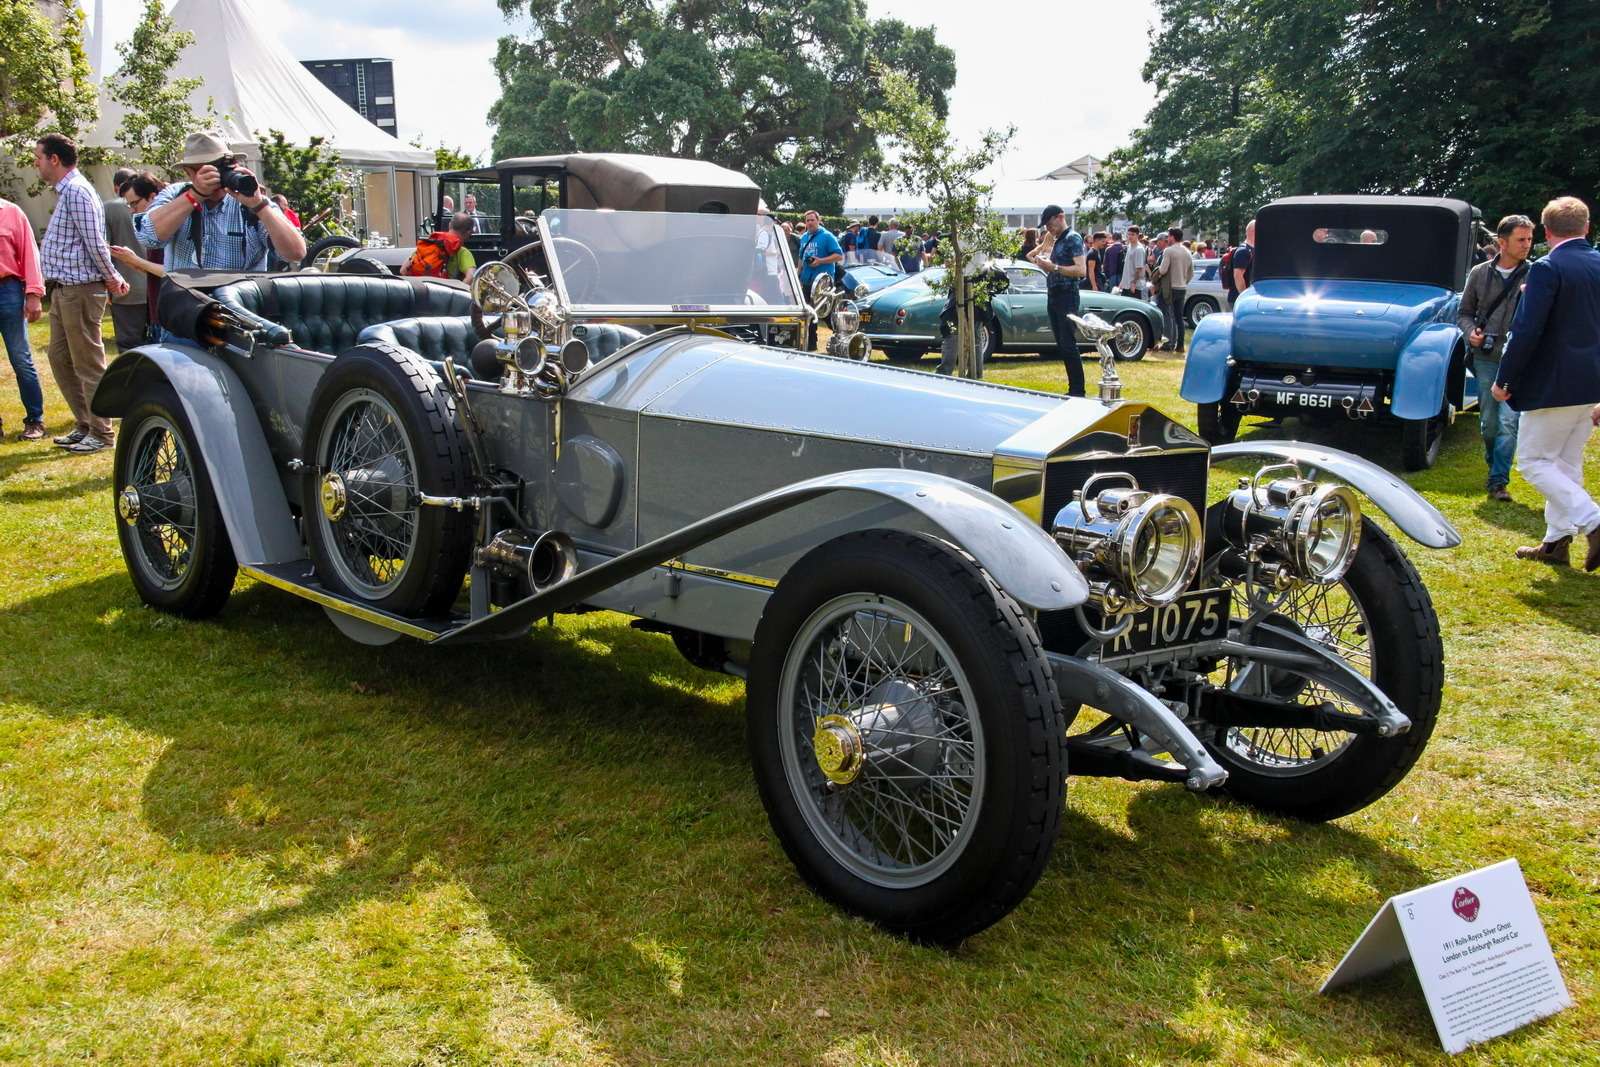 Еще один участник конкурса Style et Luxe, тоже Rolls-Royce Silver Ghost 1911 года. Модель 40/50 сделали для ралли Лондон – Эдинбург по заказу директора Клода Джонсона. Семилитровый шестицилиндровый двигатель форсировали, как могли, на шасси установили легкий спортивный кузов, максимально понизив центр тяжести. Прототипу дали прозвище Sluggard («лентяй»), хотя он все-таки достиг максимальной скорости в ралли, побив предыдущий рекорд, установленный на машине Napier. А аналогичный автомобиль со специальным одноместным кузовом на трассе Brooklands разогнался до 101 мили в час, то есть до 162,5 км/ч.